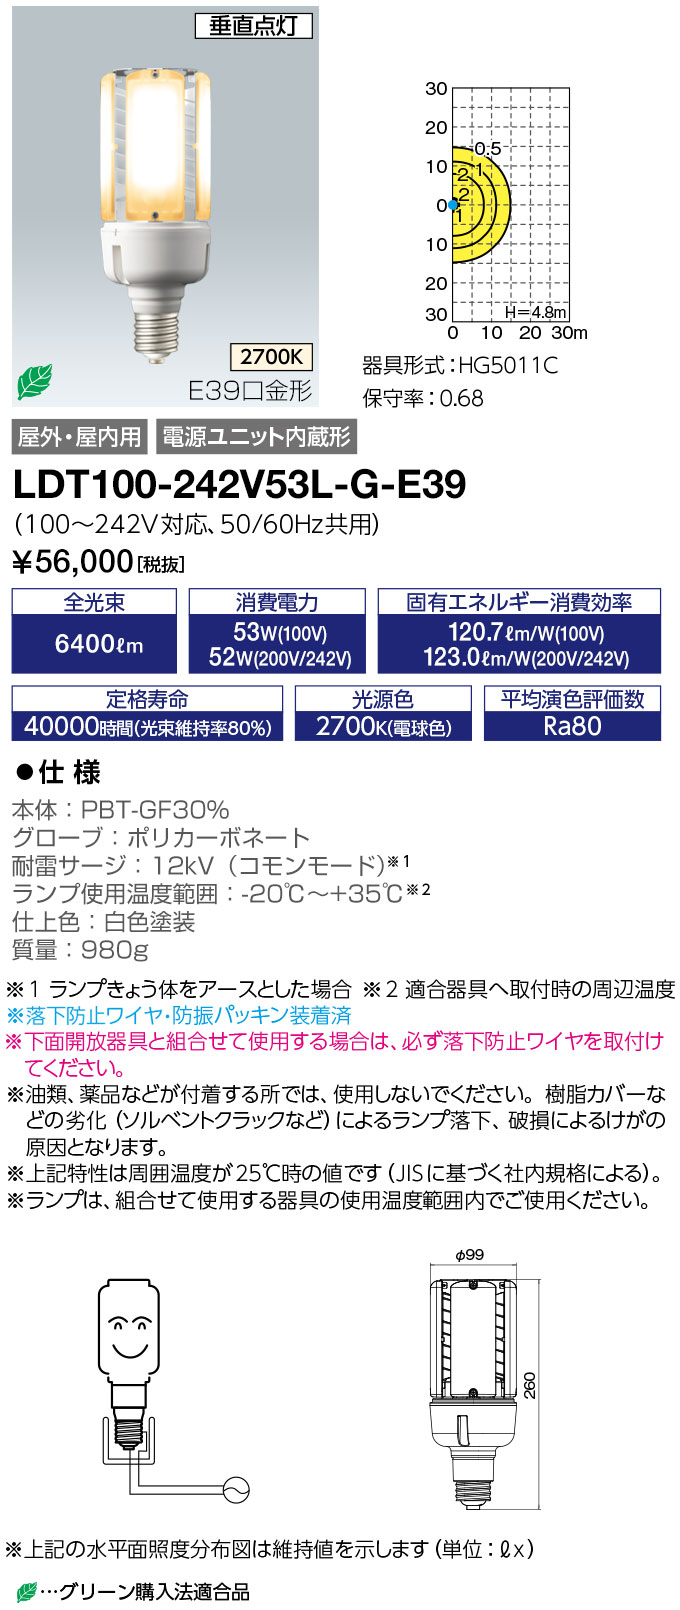 LDT100-242V53L-G-E39